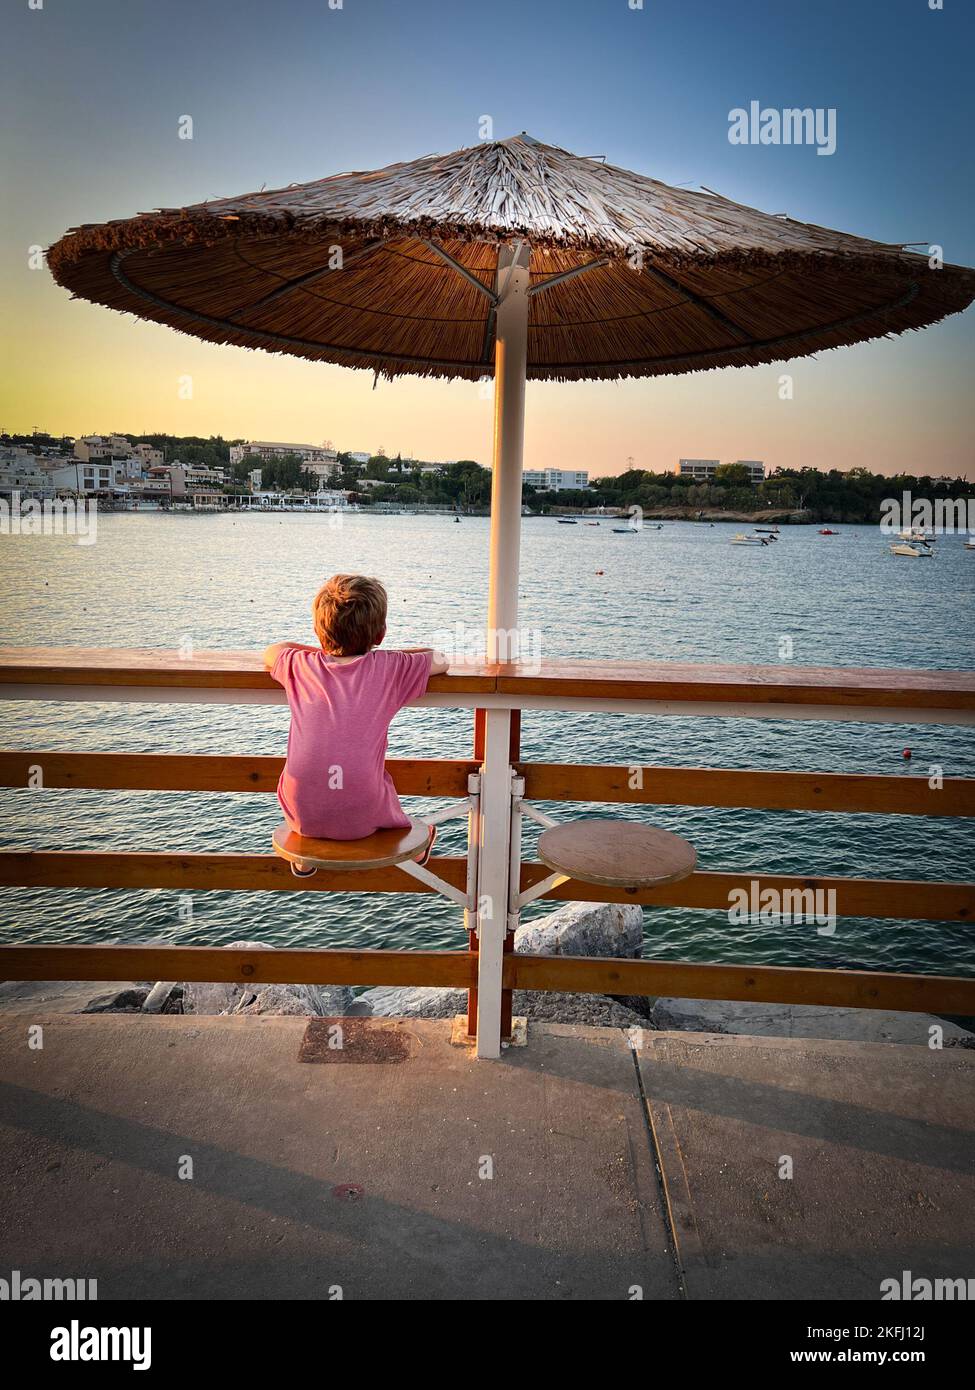 Rückansicht des kaukasischen Jungen, der die Meereslandschaft gegen den Himmel betrachtet, während er während des Sonnenuntergangs am Geländer unter dem Sonnenschirm sitzt Stockfoto